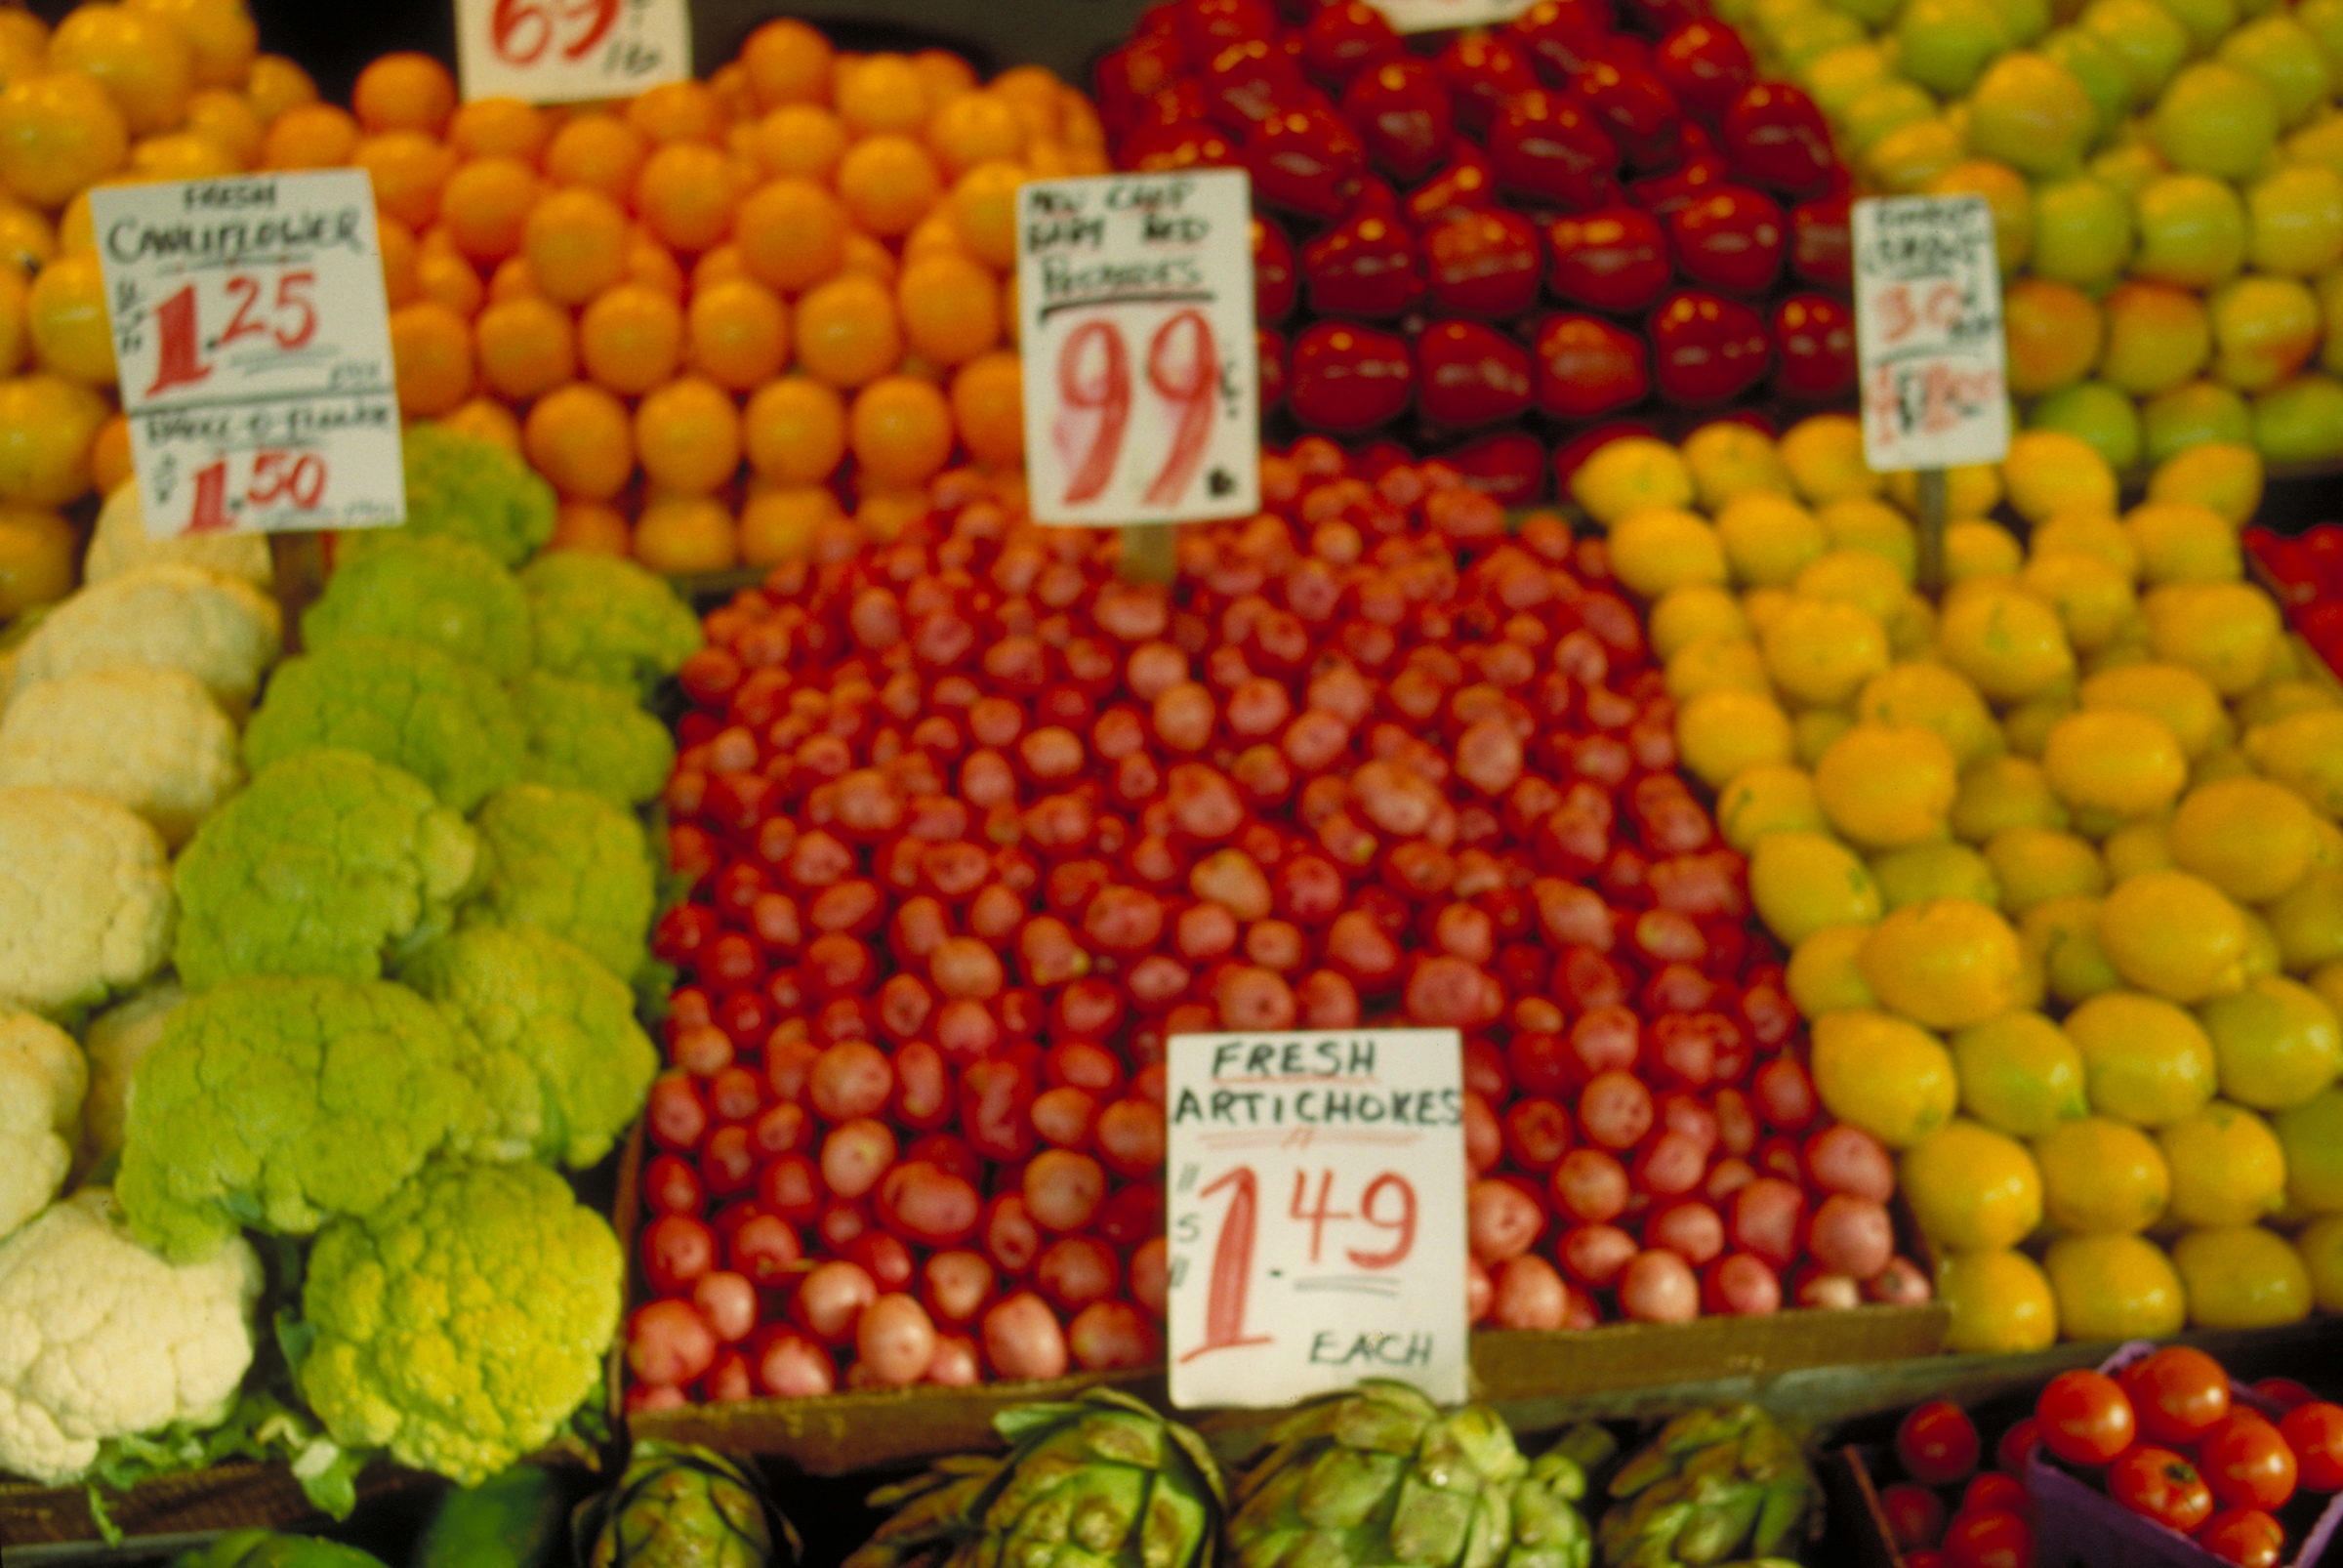 Obst im Supermarkt, Quelle: photos.com